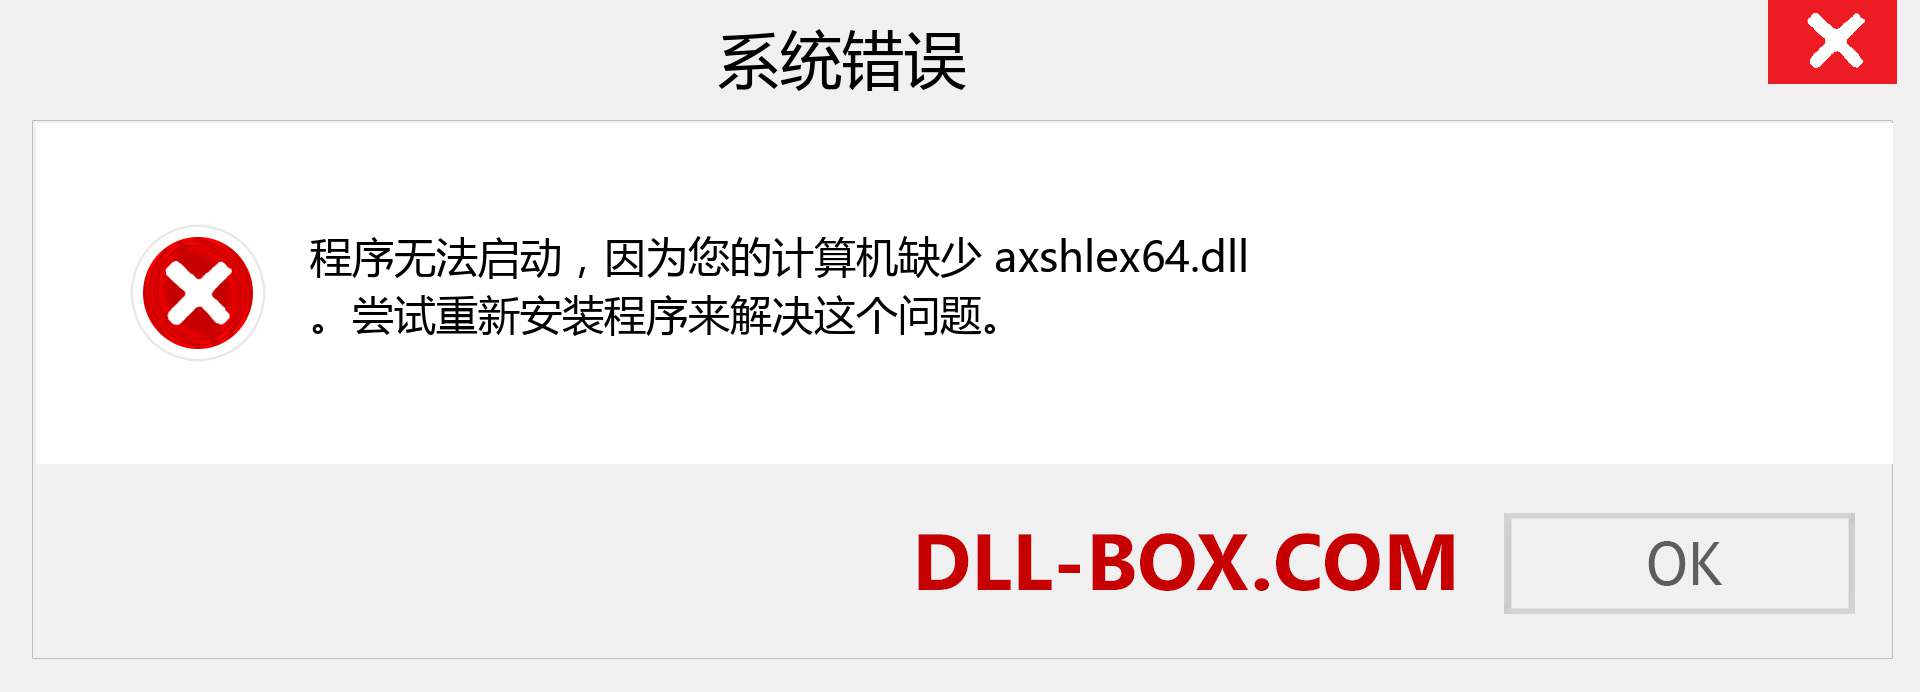 axshlex64.dll 文件丢失？。 适用于 Windows 7、8、10 的下载 - 修复 Windows、照片、图像上的 axshlex64 dll 丢失错误